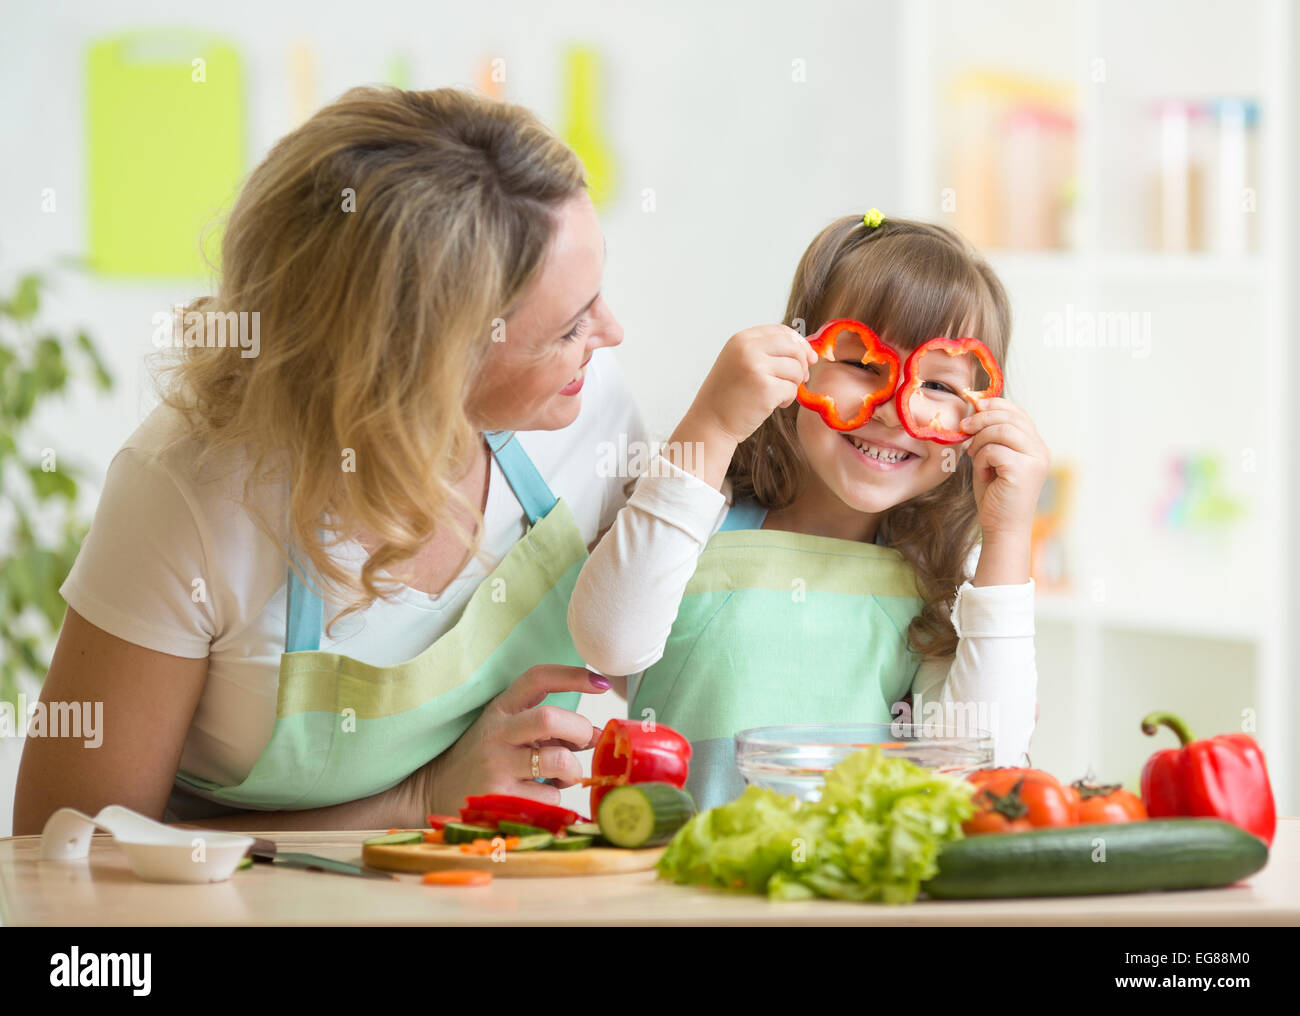 La madre y su hijo preparar comida sana y divertida Foto de stock